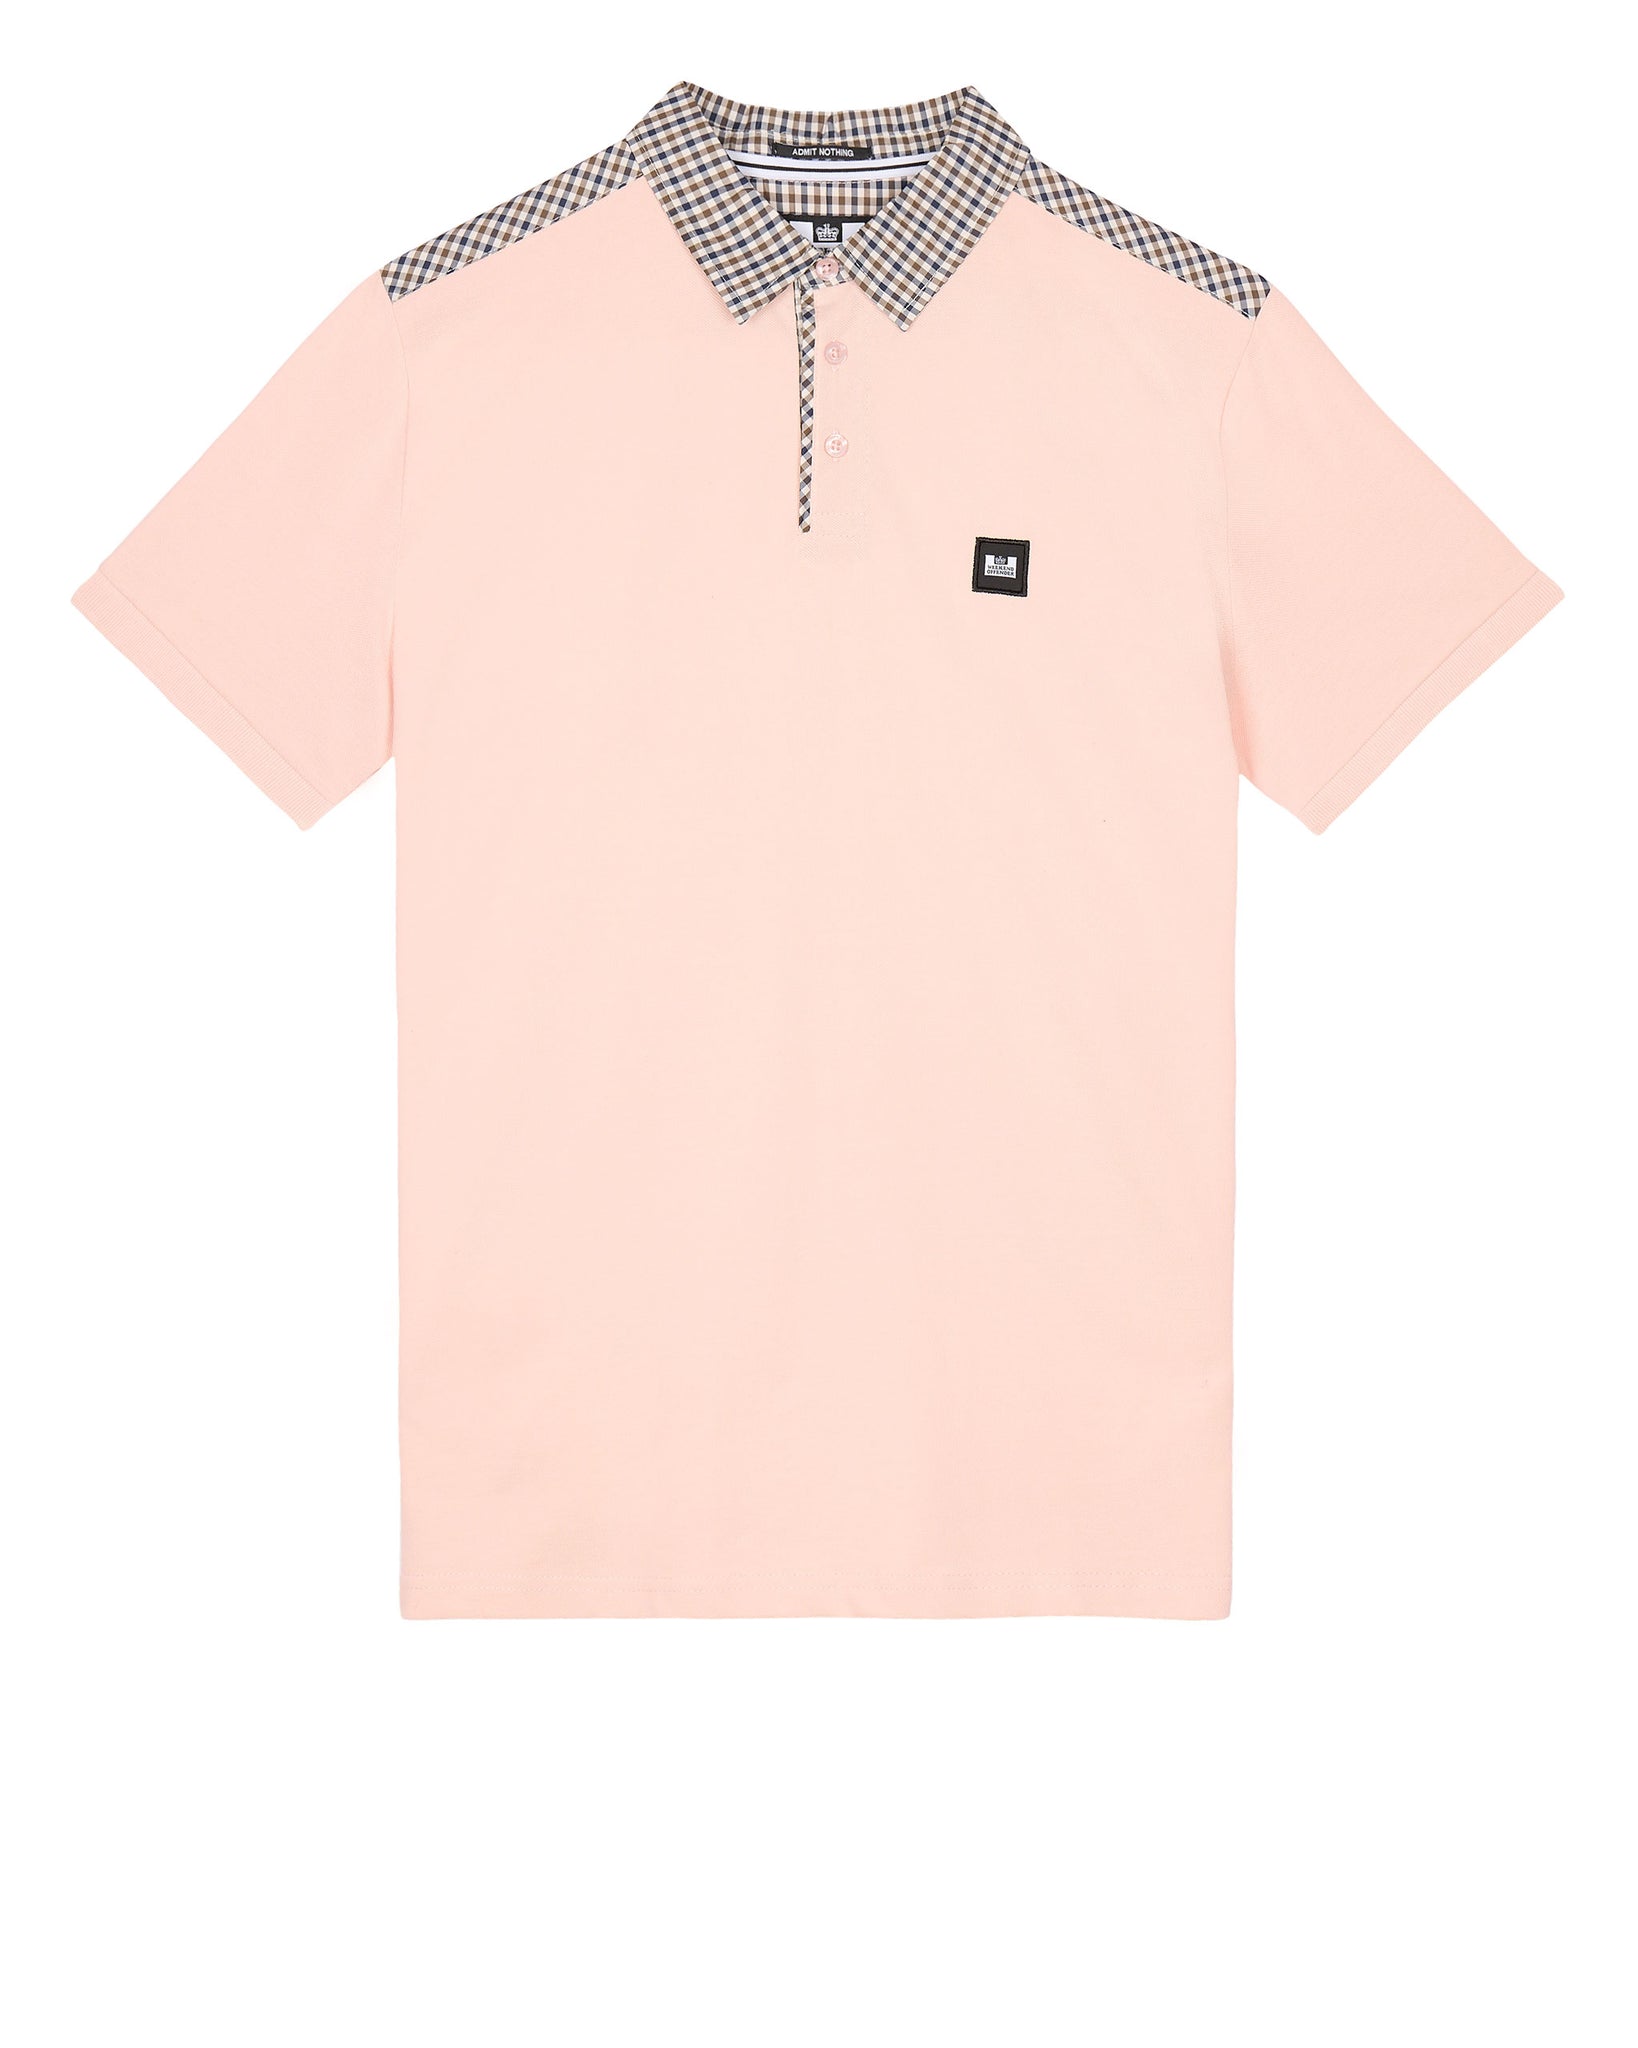 Costa Polo Shirt Peachy/House Check